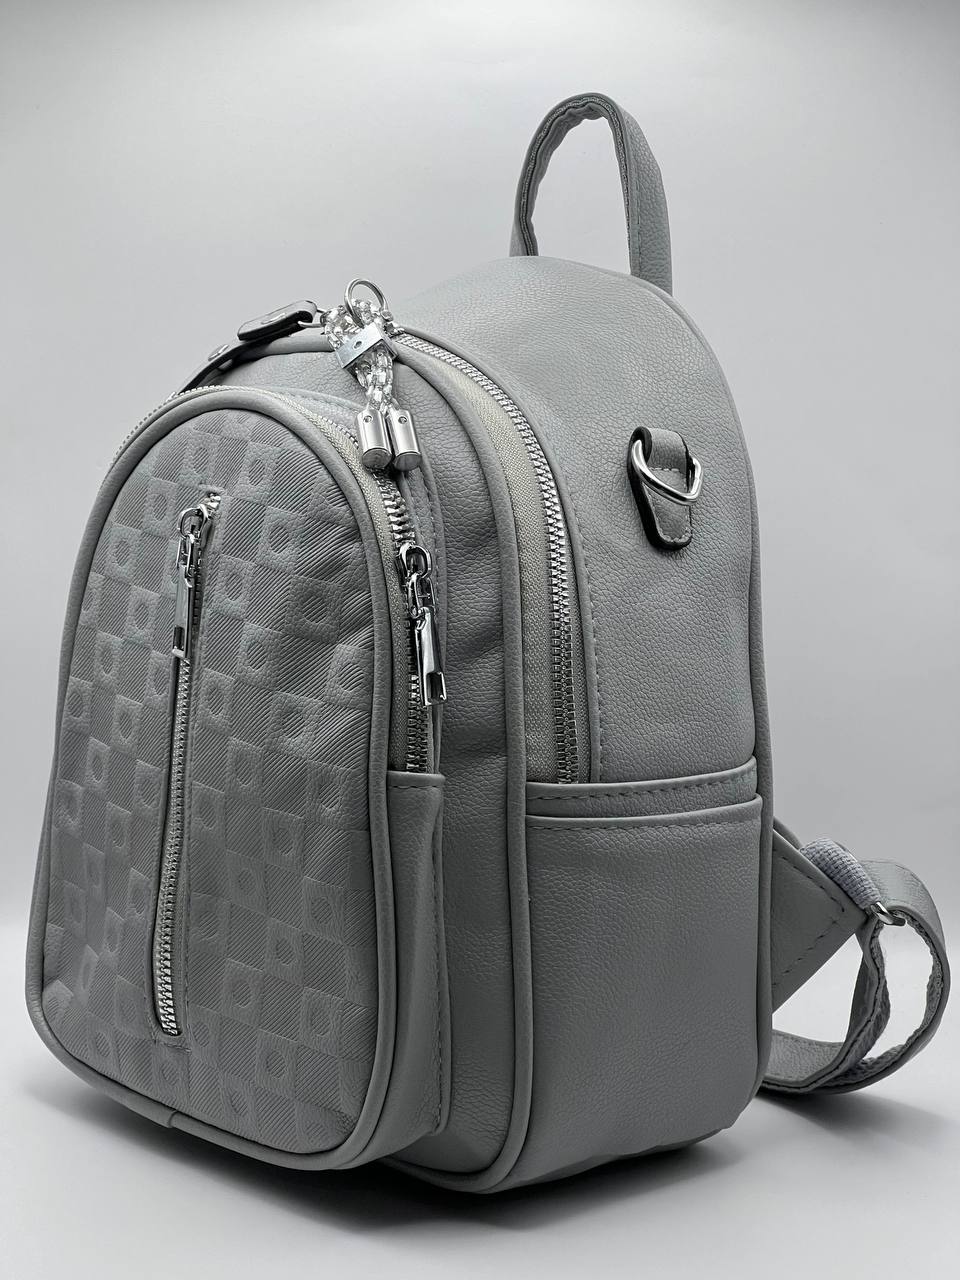 Сумка-рюкзак женская SunGold Р-92010 серая, 27х22х12 см